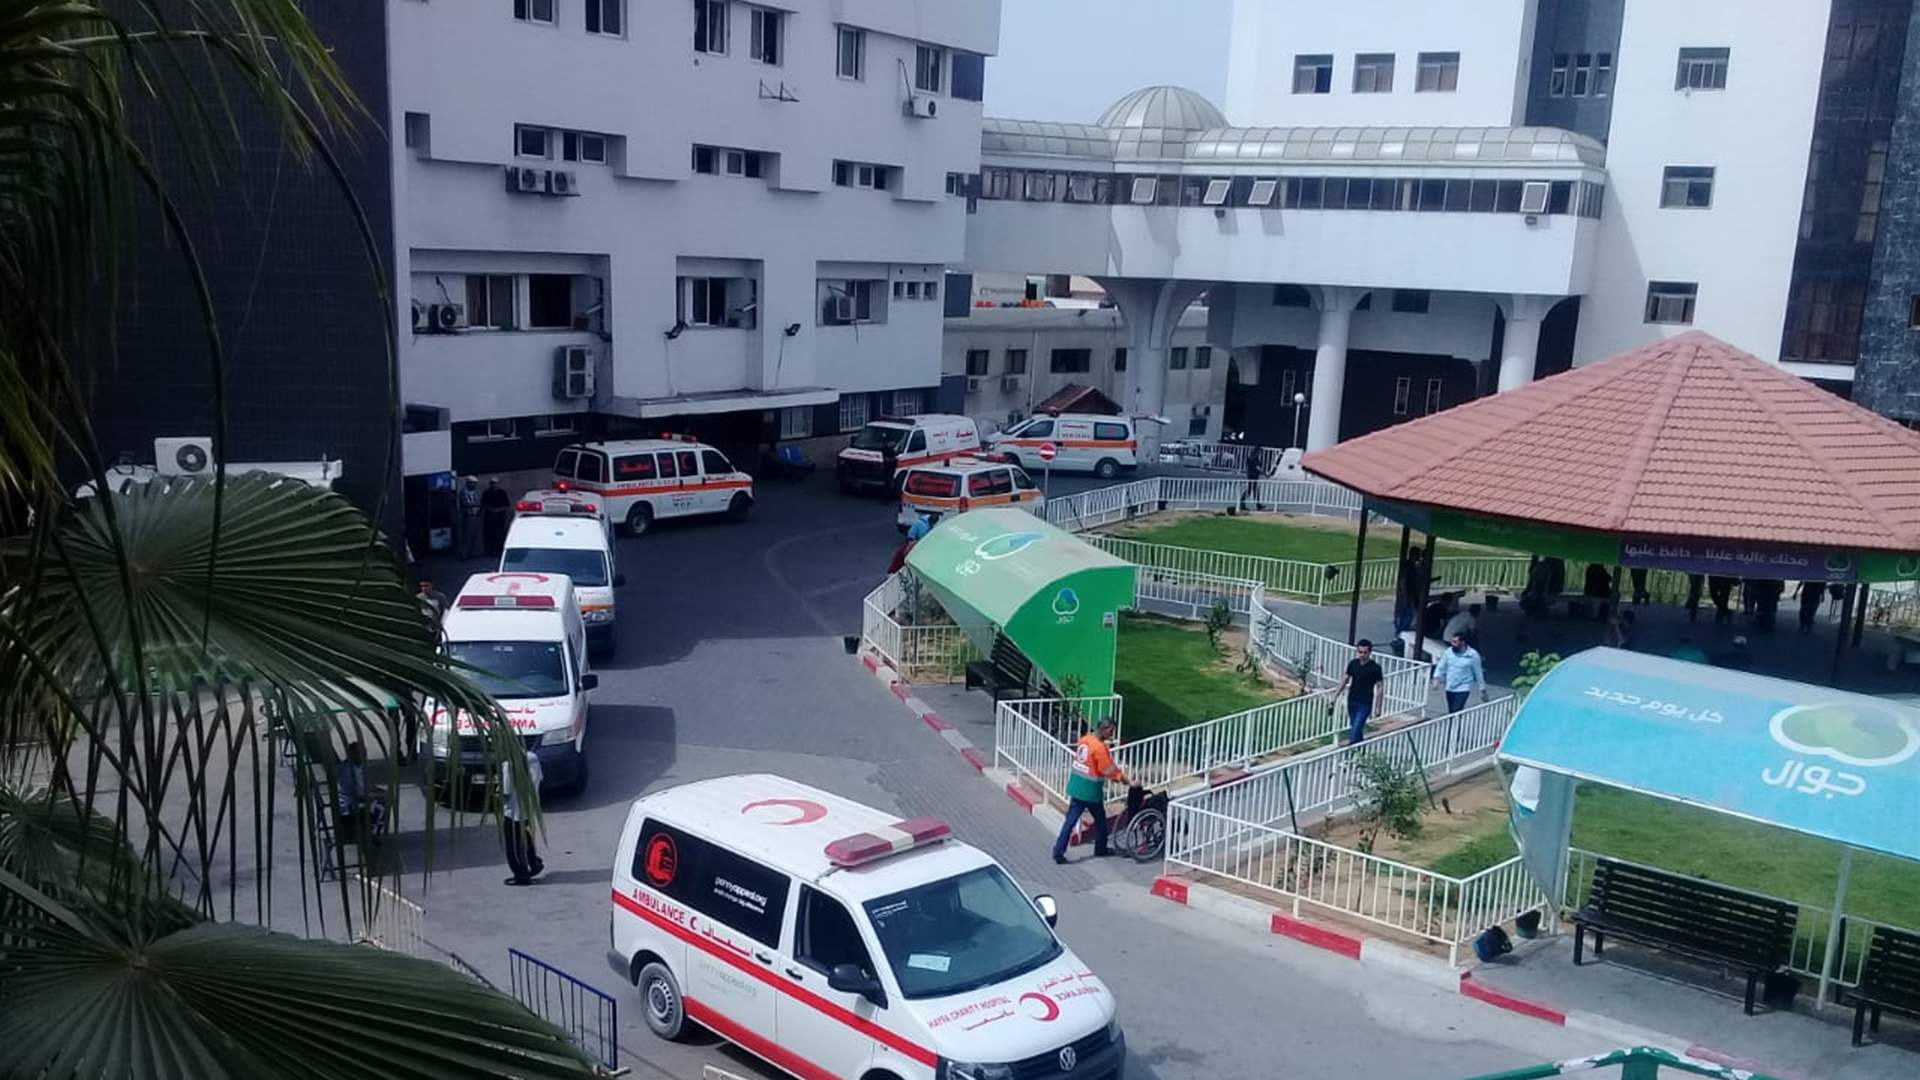 مسؤول أميركيّ: حماس استخدمت مجمع الشفاء الطبيّ للإشراف على القوات واحتجاز بعض الرهائن